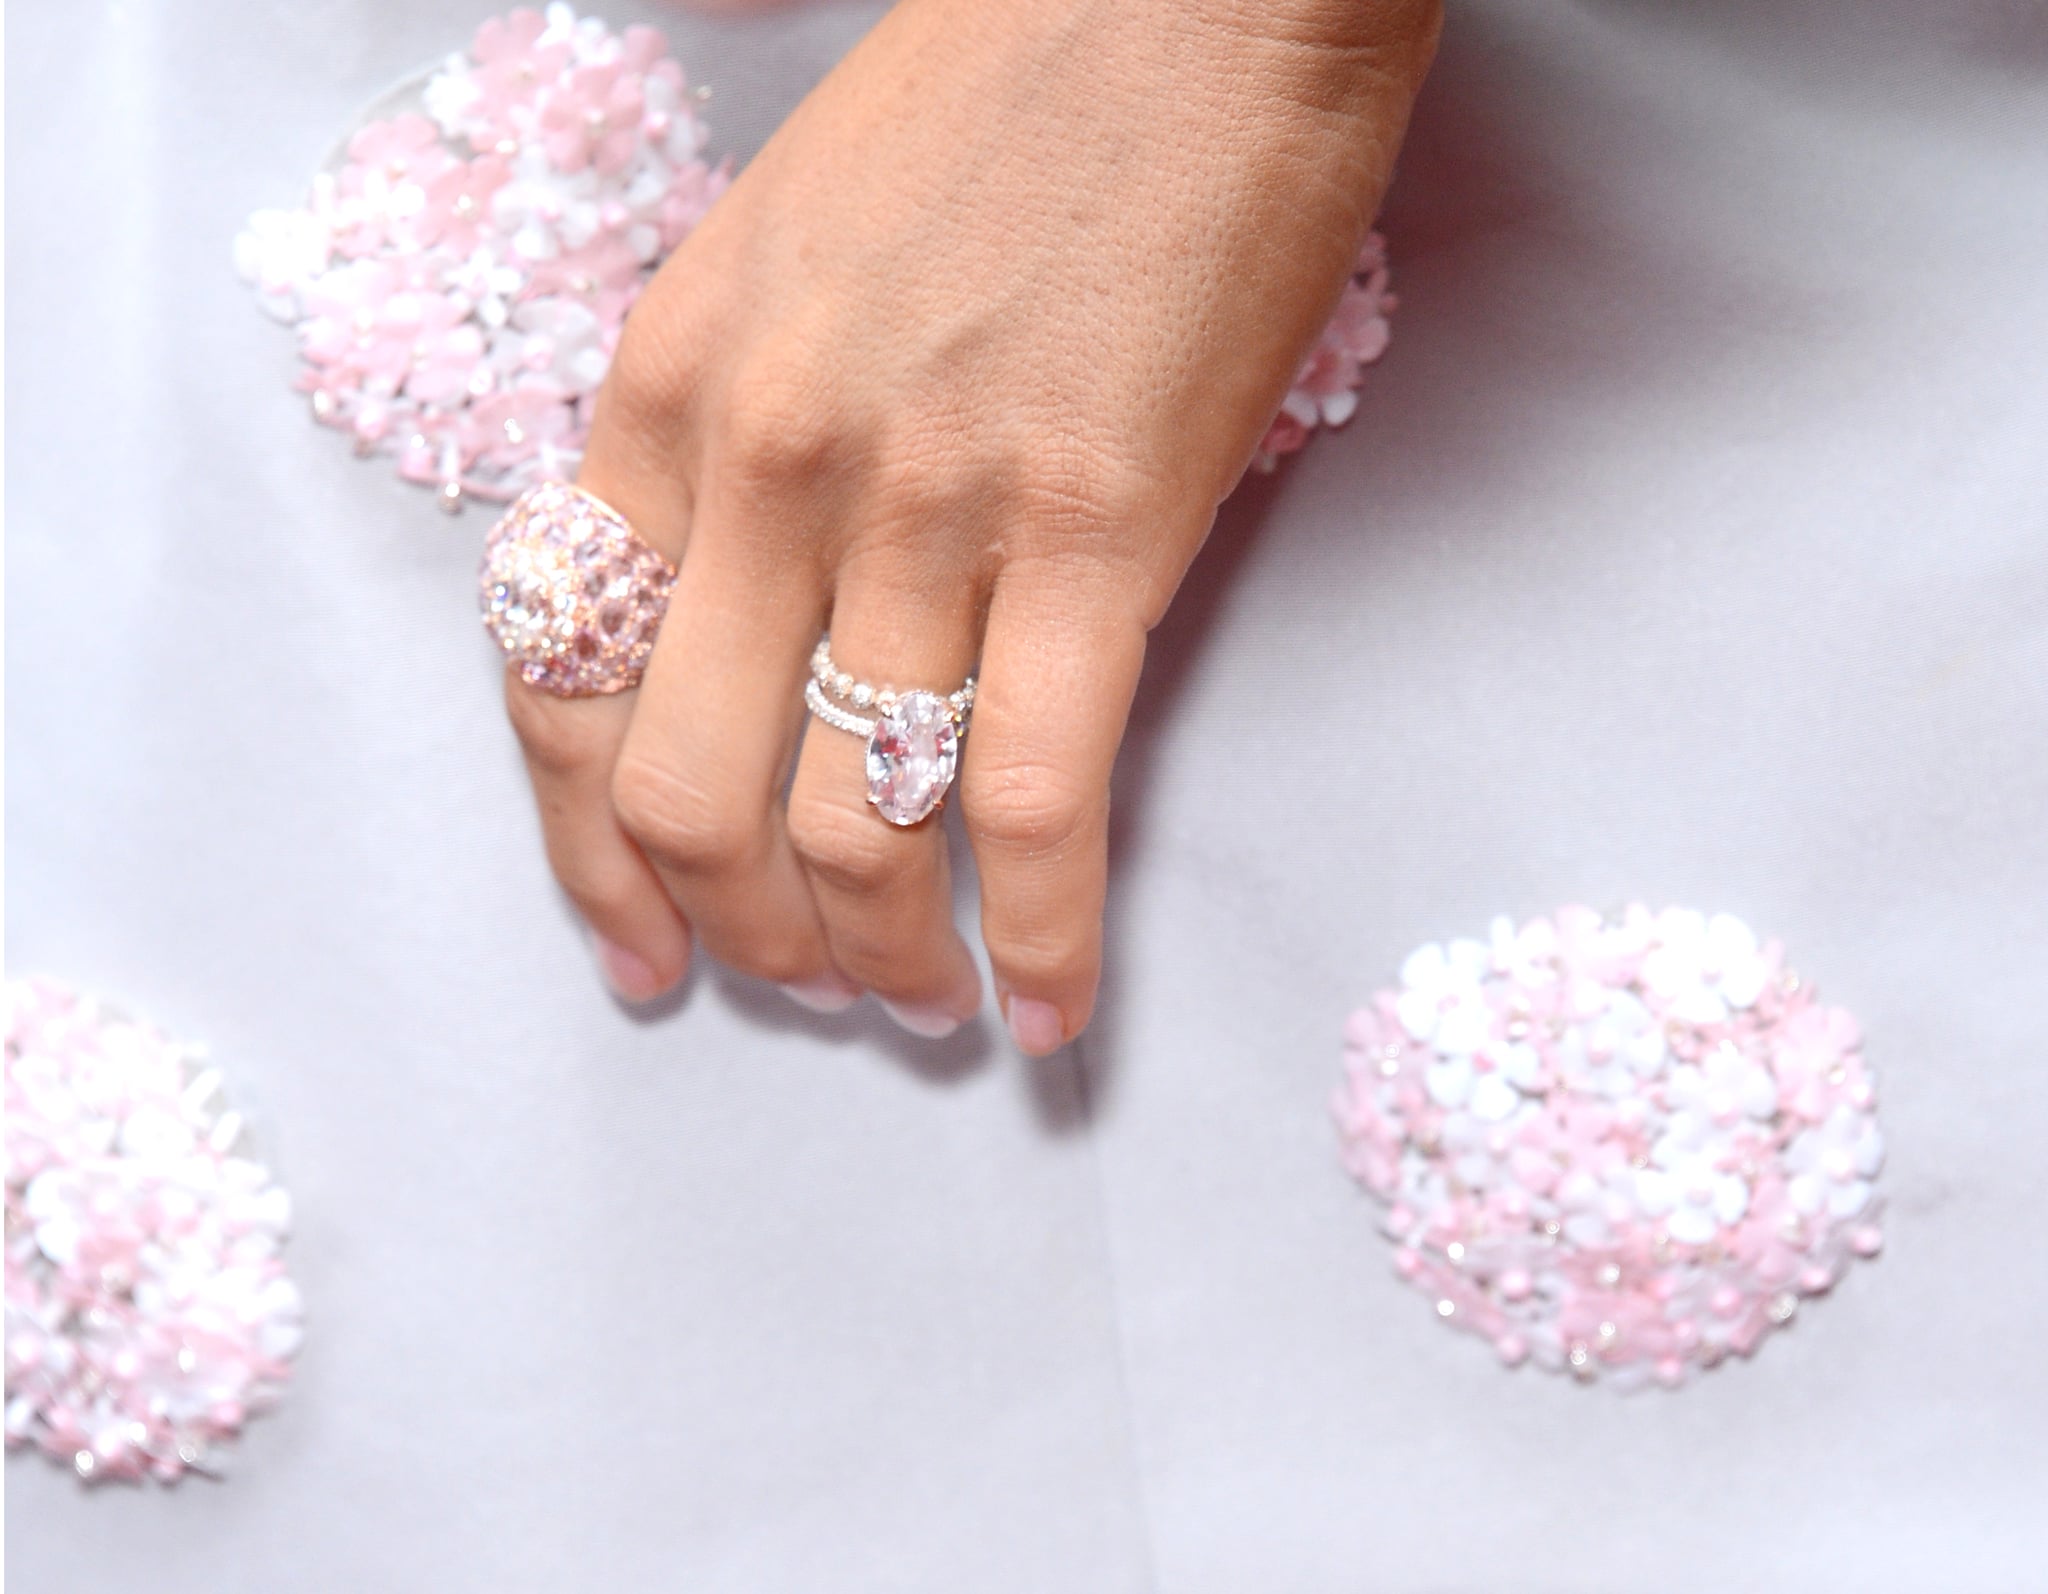 hilary duff engagement ring | Hilary duff engagement ring, Engagement rings,  Best engagement rings